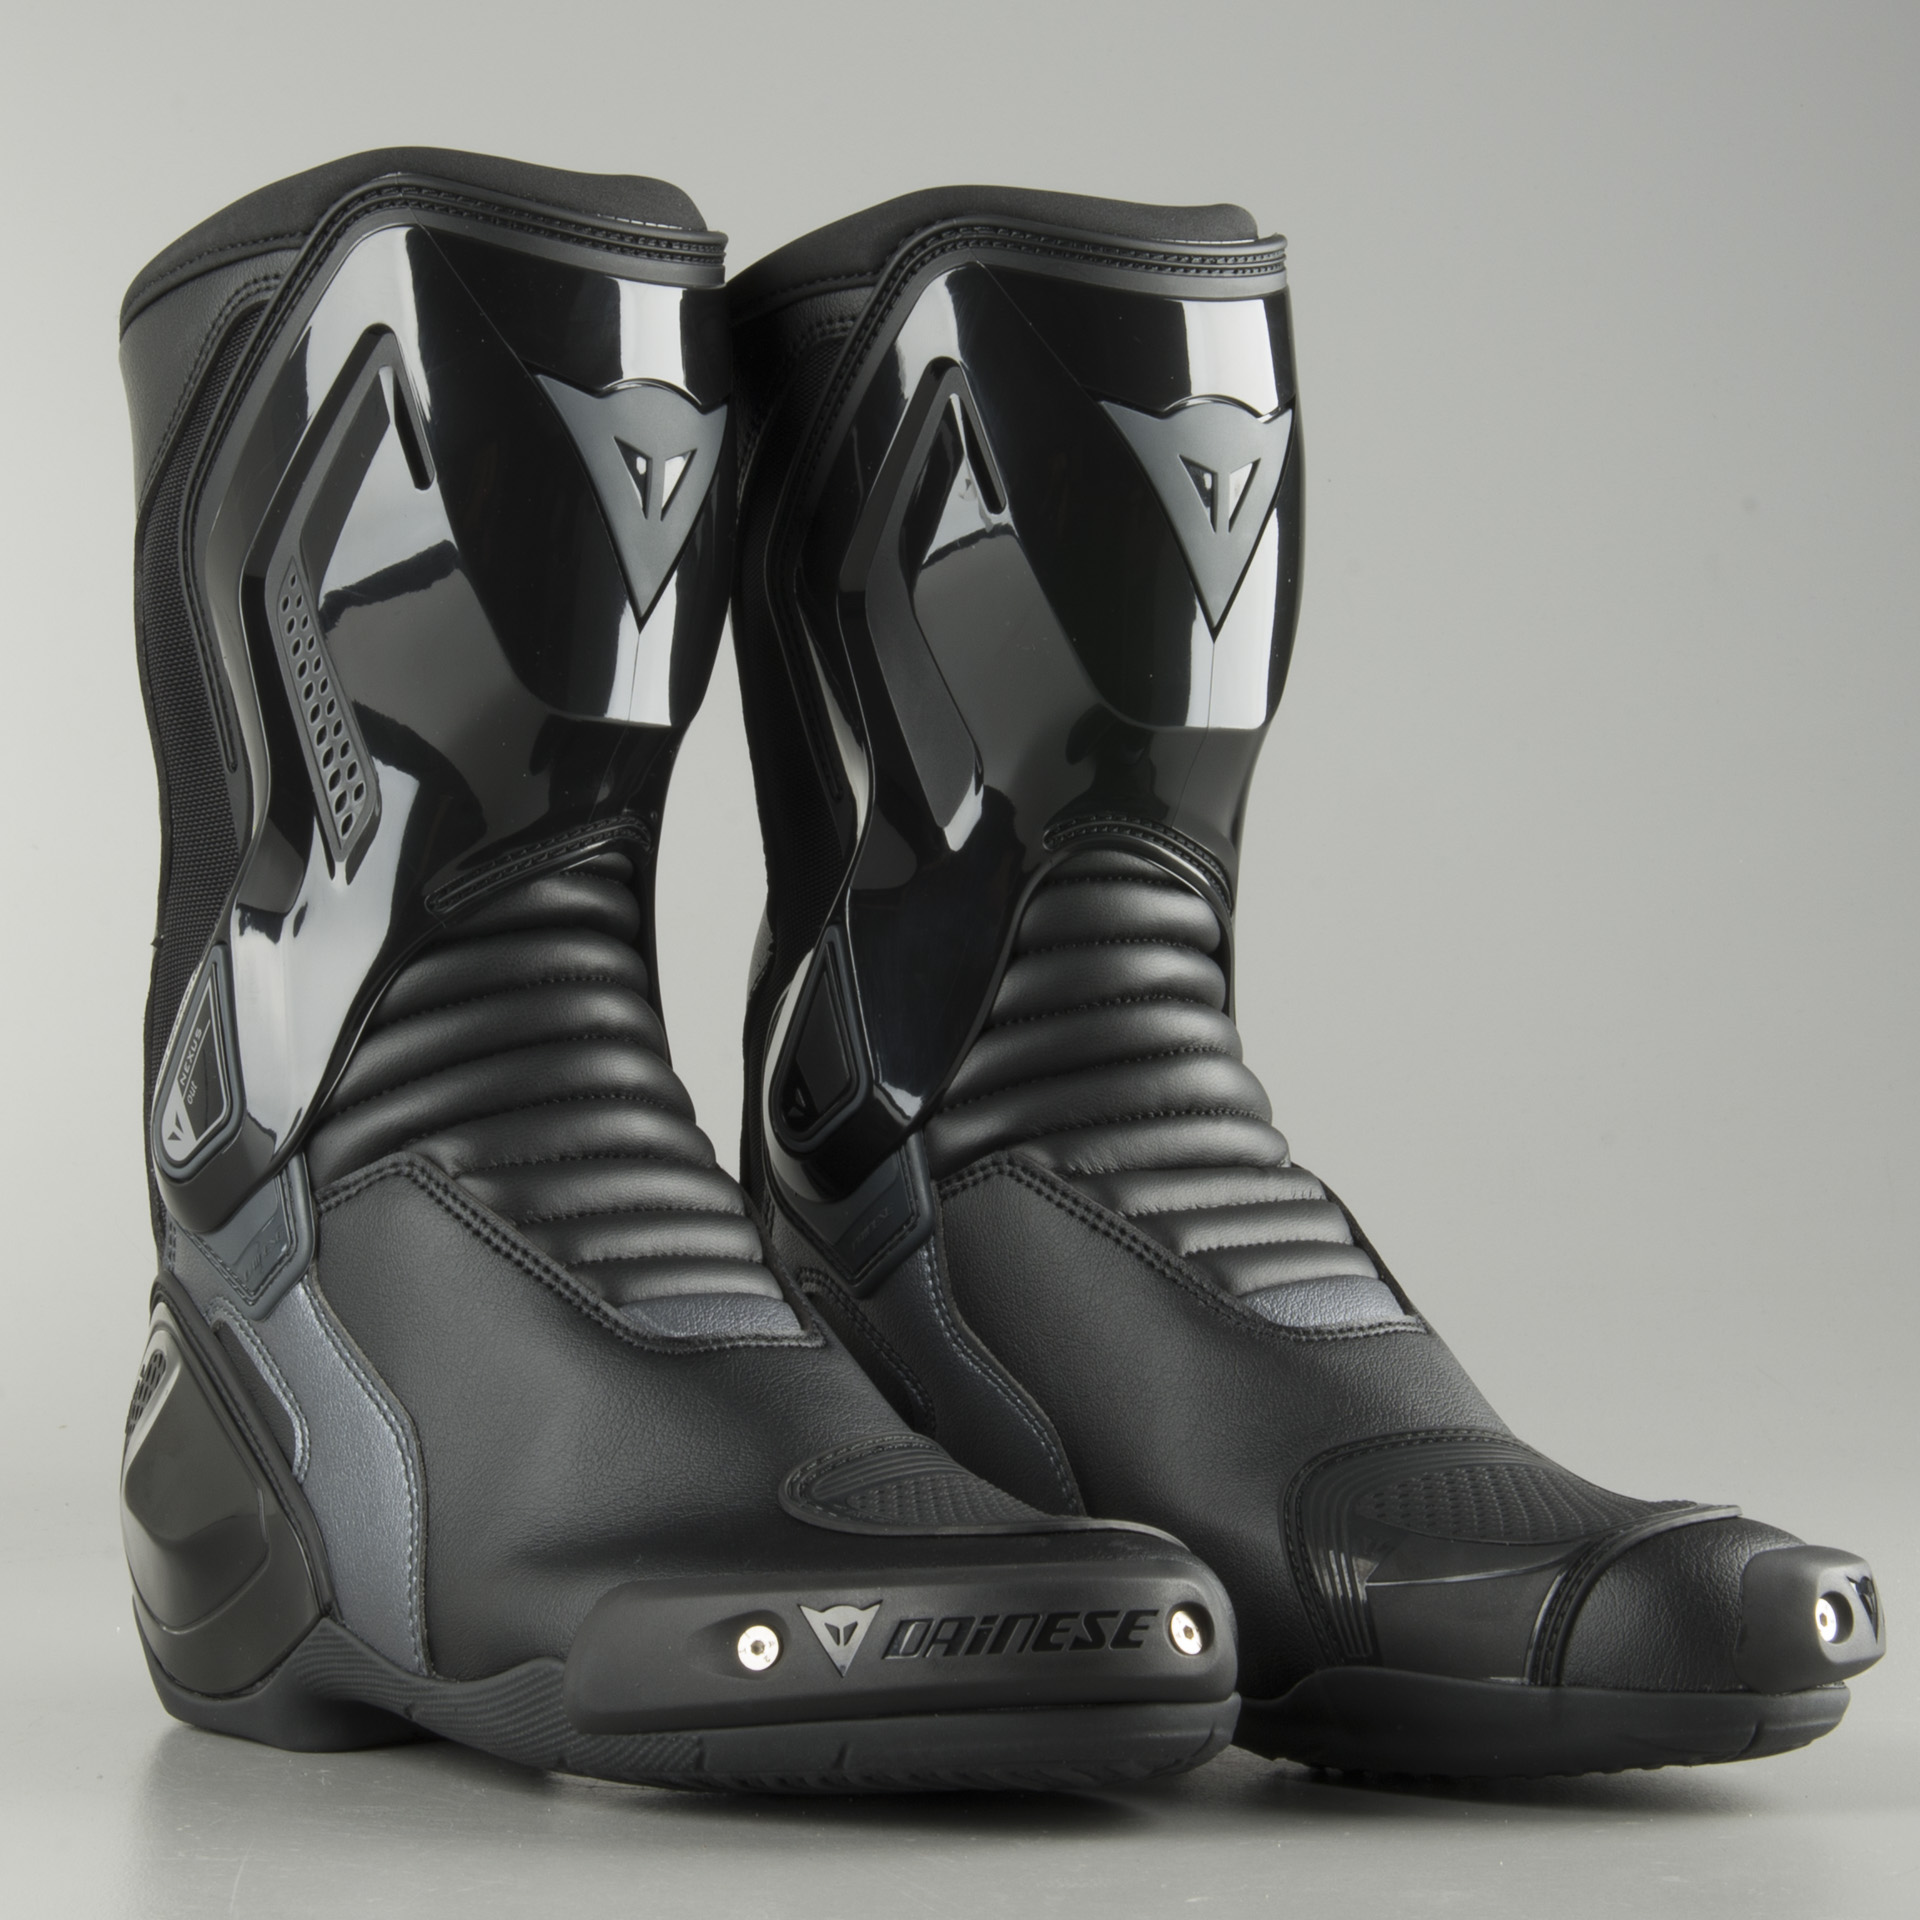 nexus boots